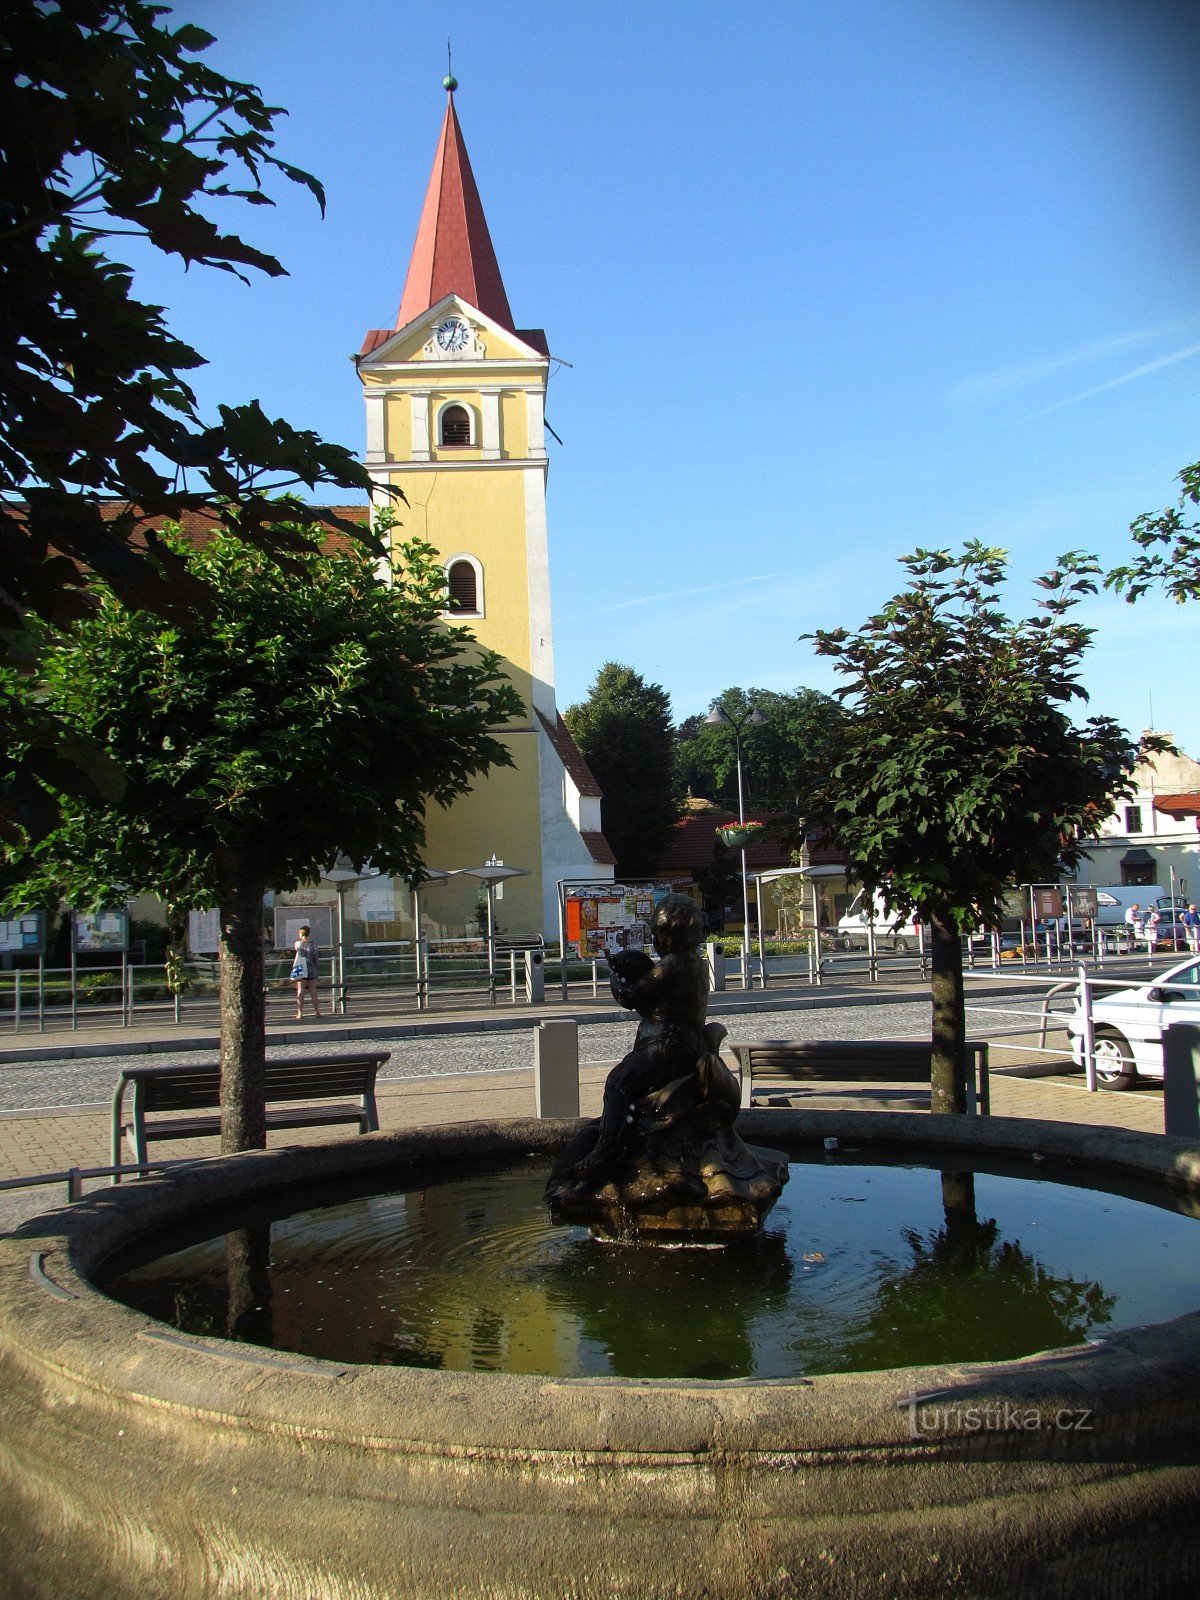 Koryčany - đài phun nước và nhà thờ